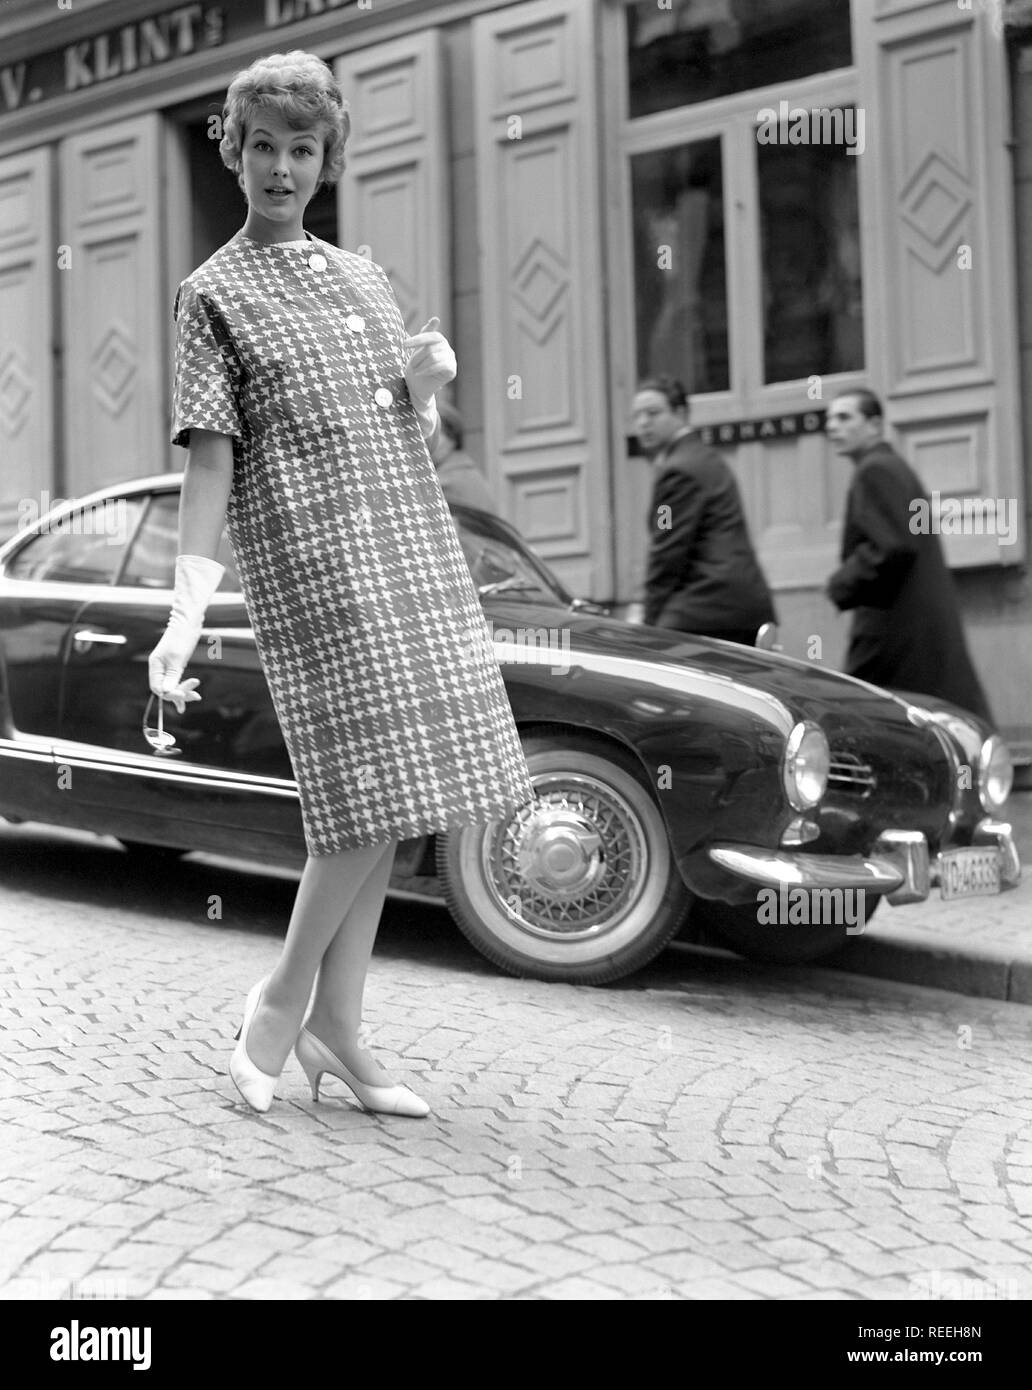 À la mode dans les années 1950. Une jeune femme porte une robe typique des  années 50. Elle pose dans la tenue dans une rue. La Suède des années 1950.  Kristoffersson Photo